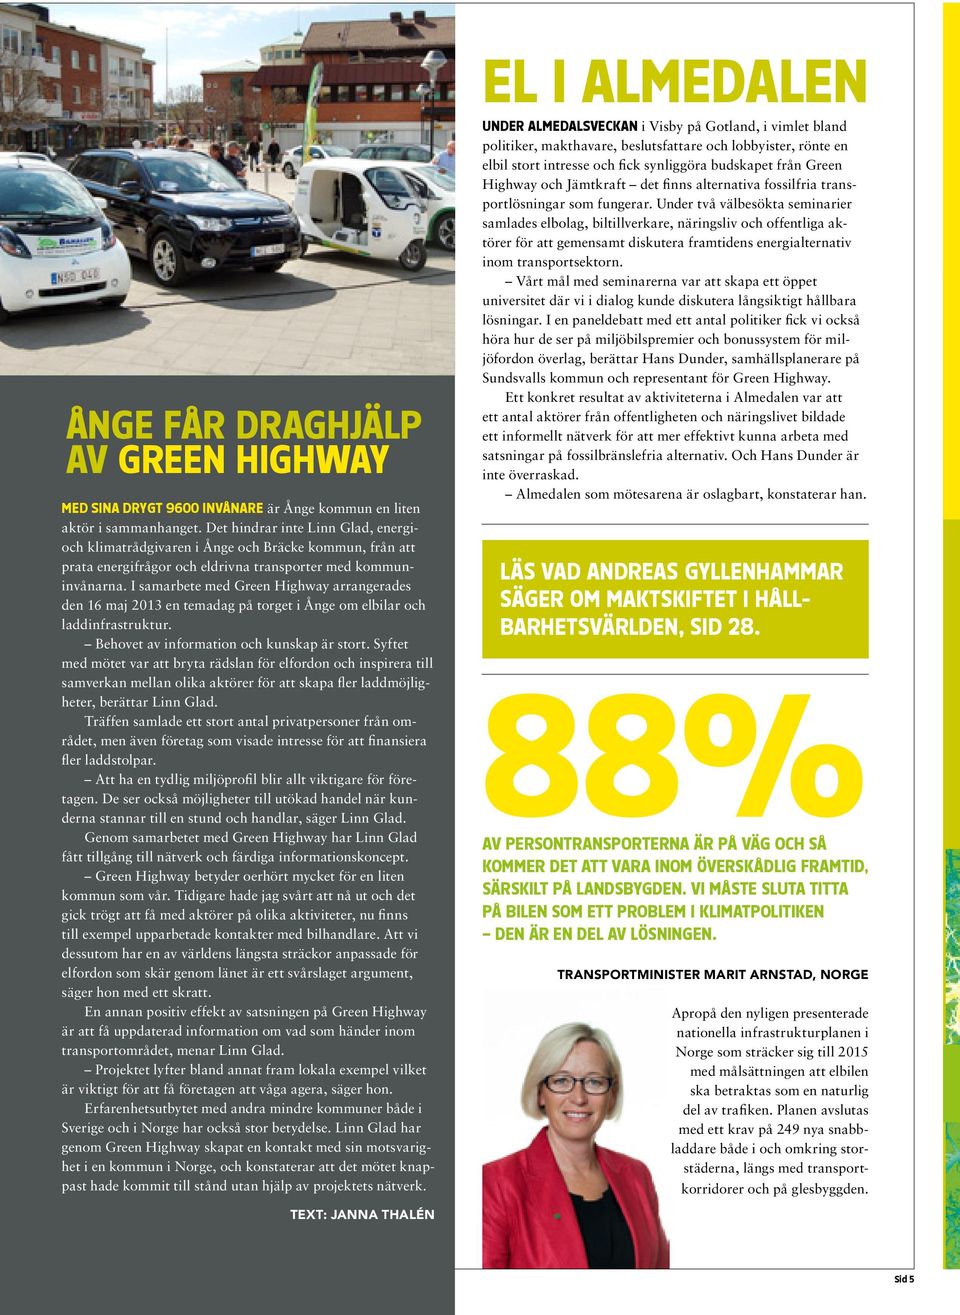 I samarbete med Green Highway arrangerades den 16 maj 2013 en temadag på torget i Ånge om elbilar och laddinfrastruktur. Behovet av information och kunskap är stort.